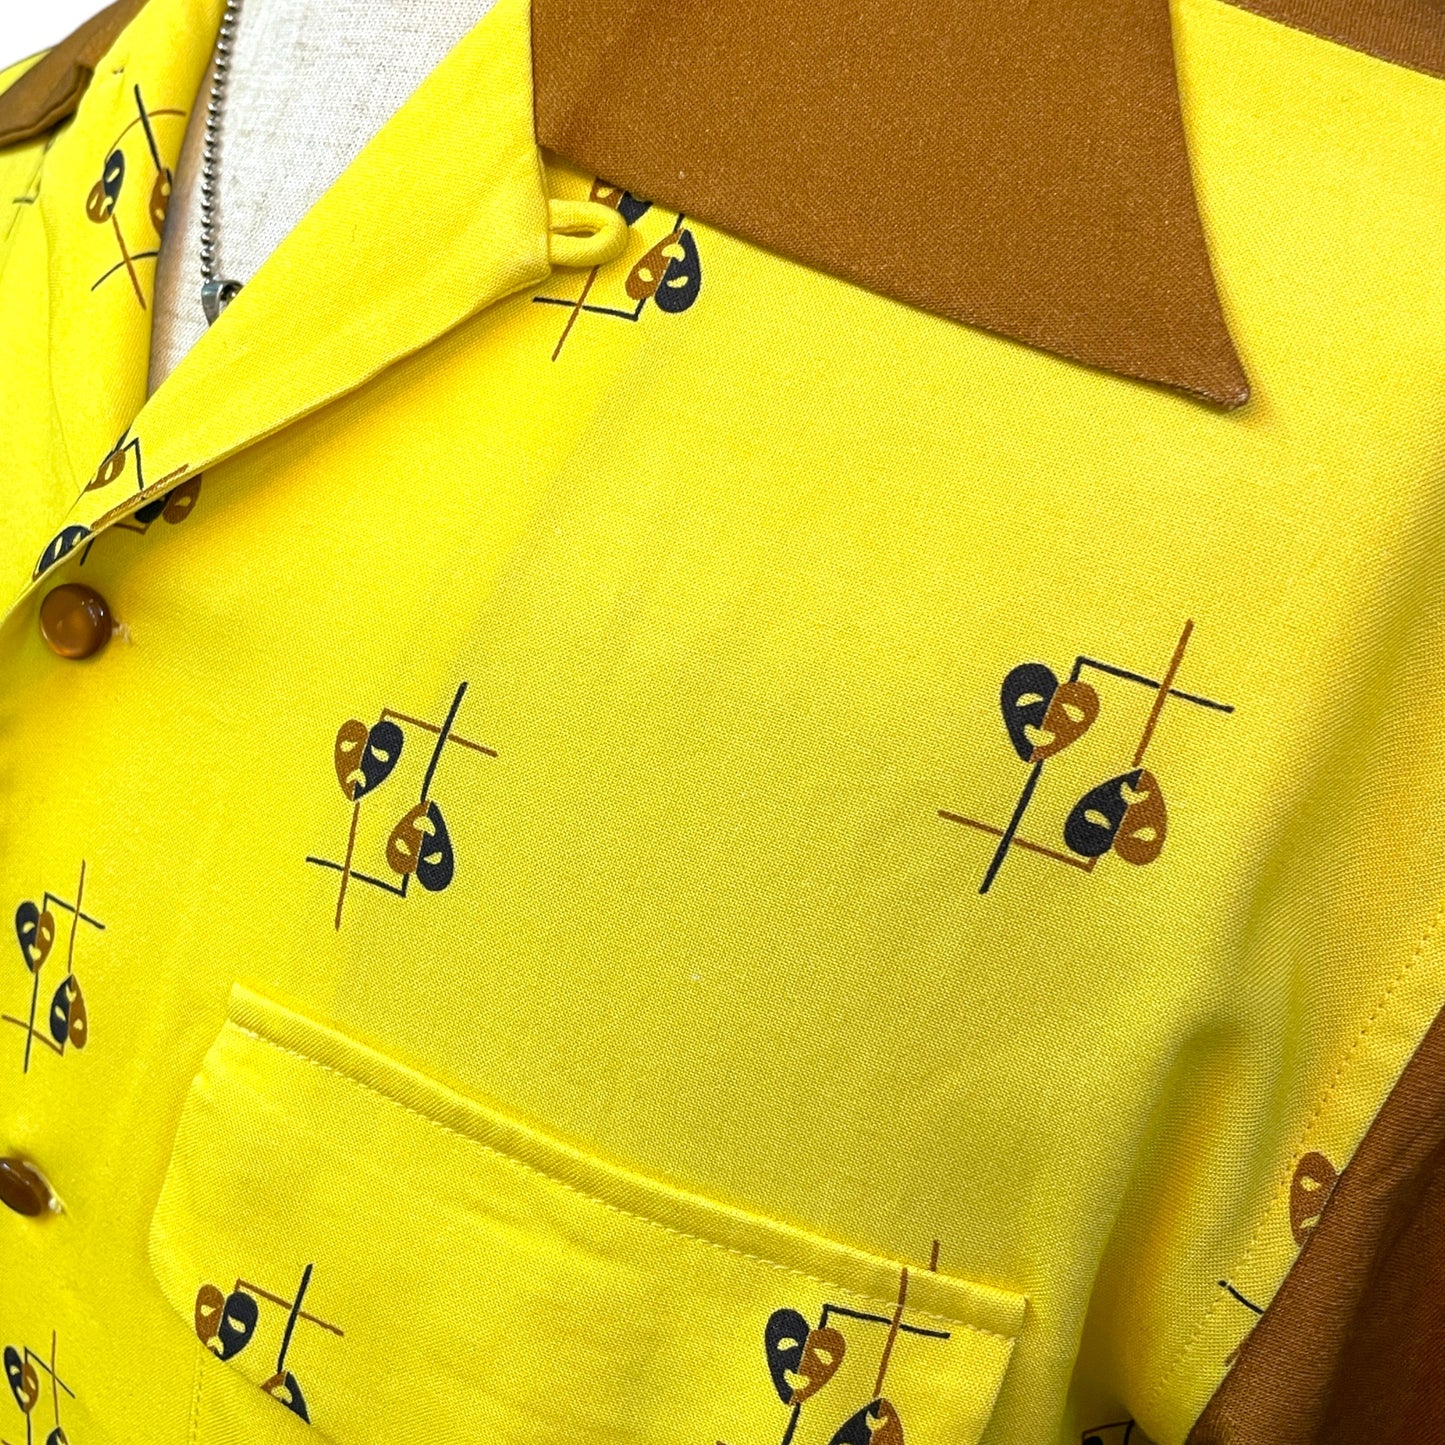 Long Sleeve Rayon Print Sports Shirt「Two Face」/長袖レーヨンプリント腰リブシャツ「トゥーフェイス」